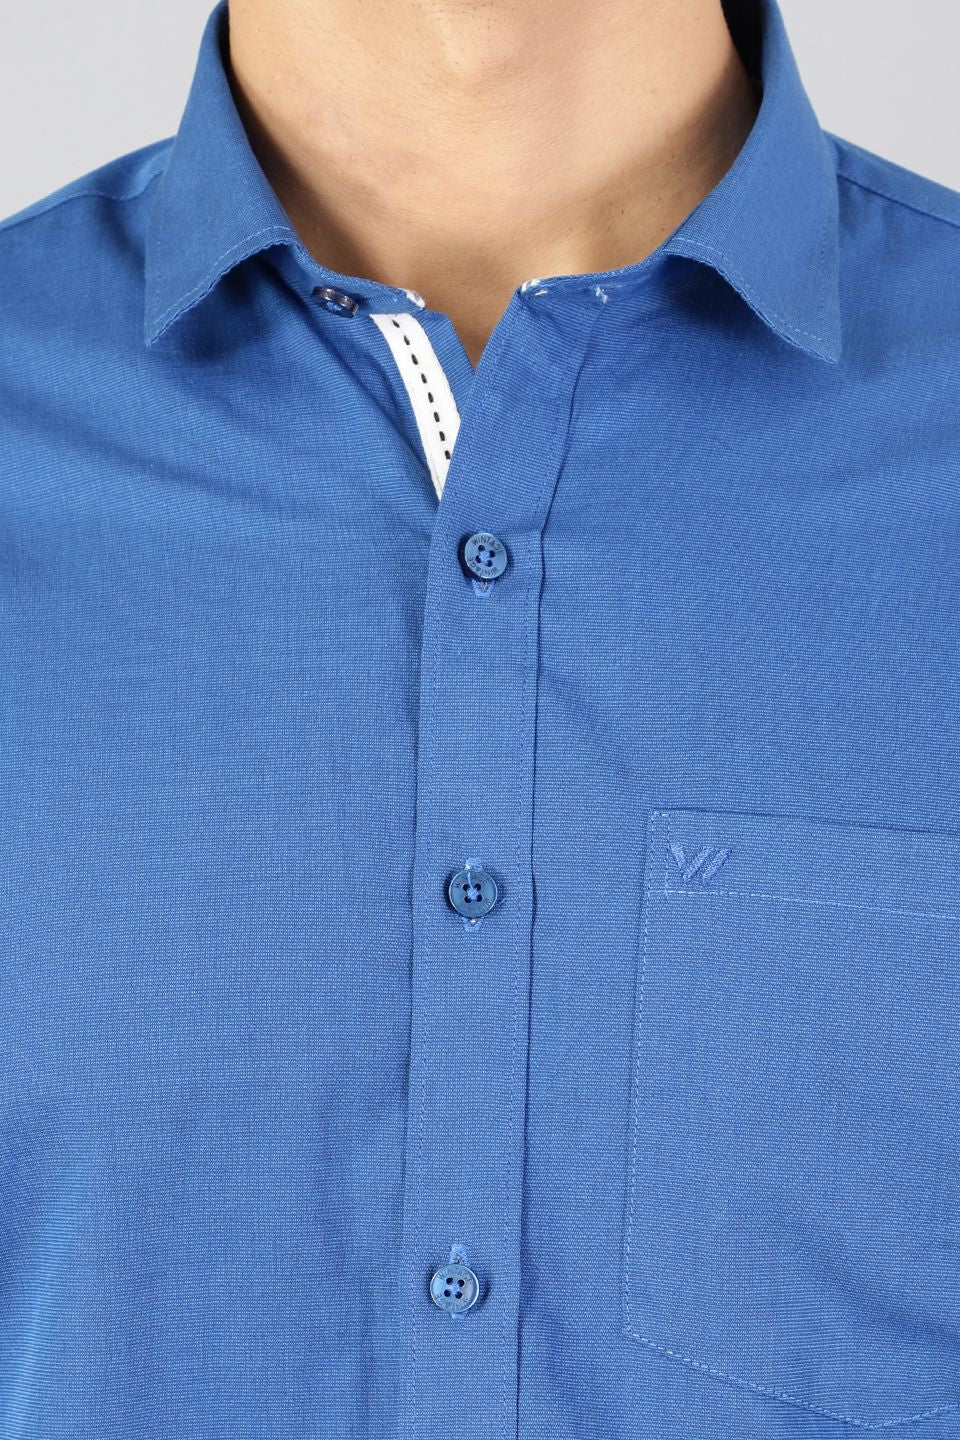 100% Premium Cotton Blue Solid Shirt